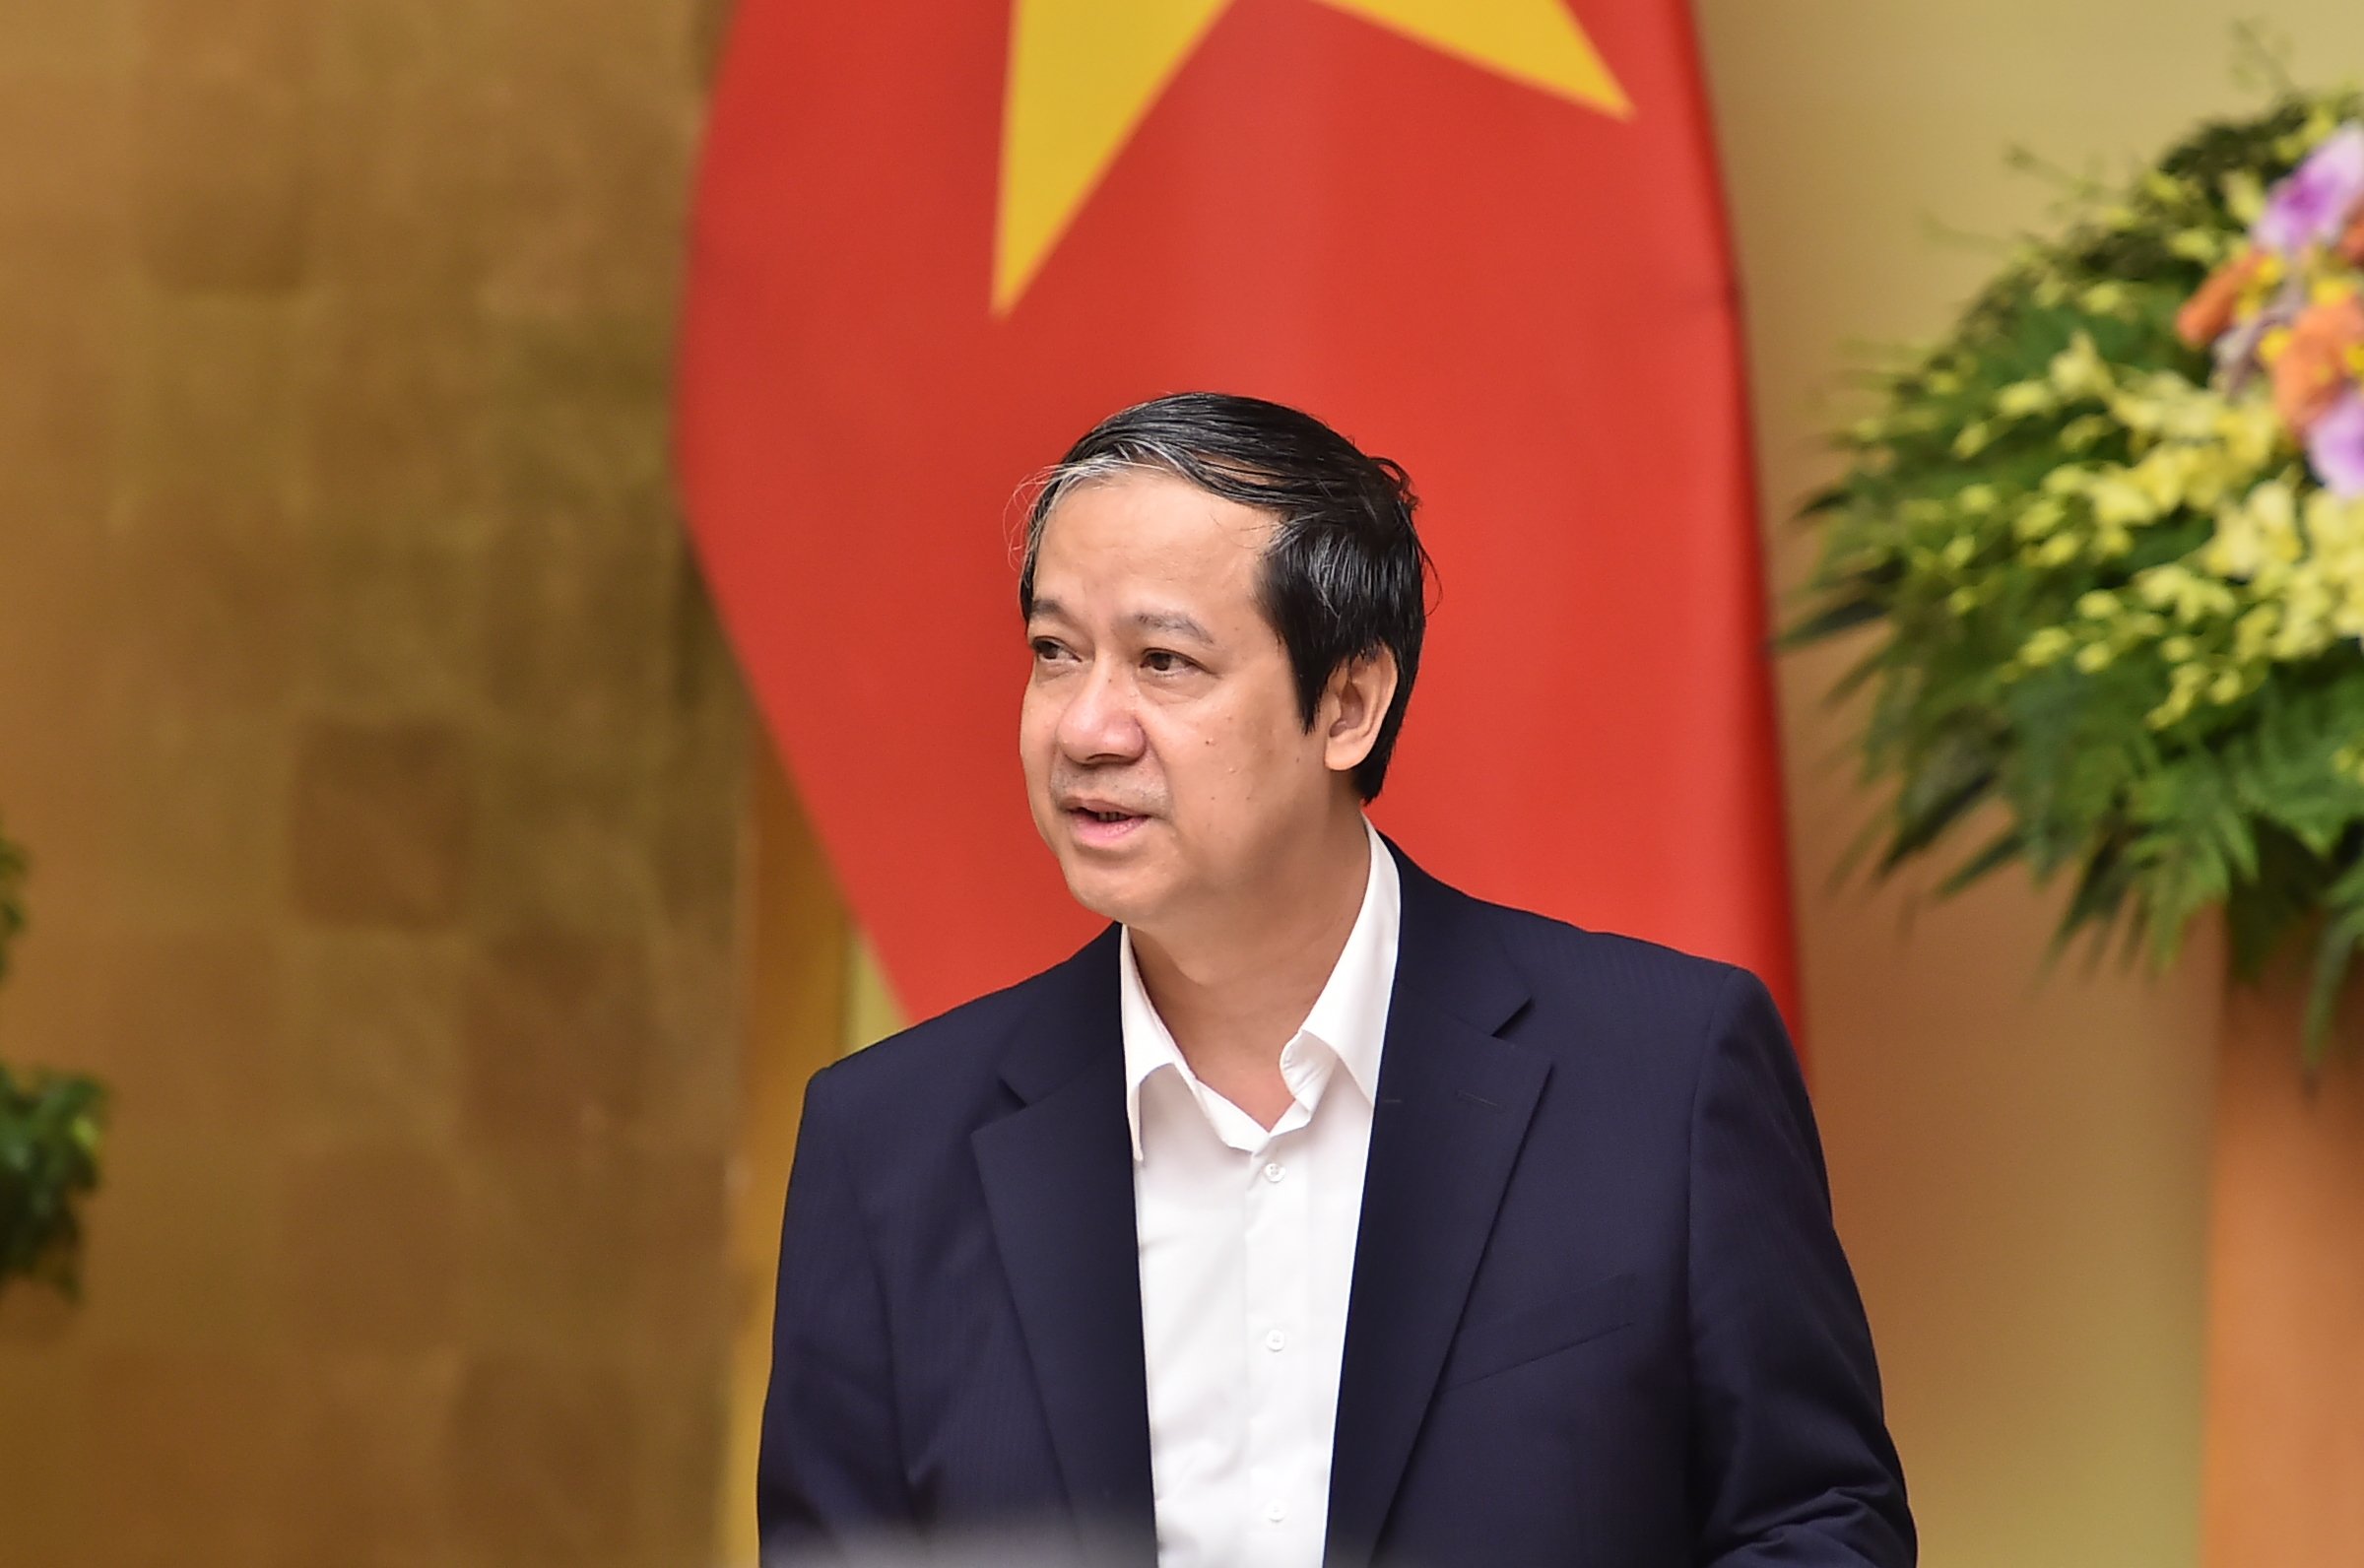 Bộ trưởng Bộ GD&ĐT Nguyễn Kim Sơn phát biểu tại phiên họp.